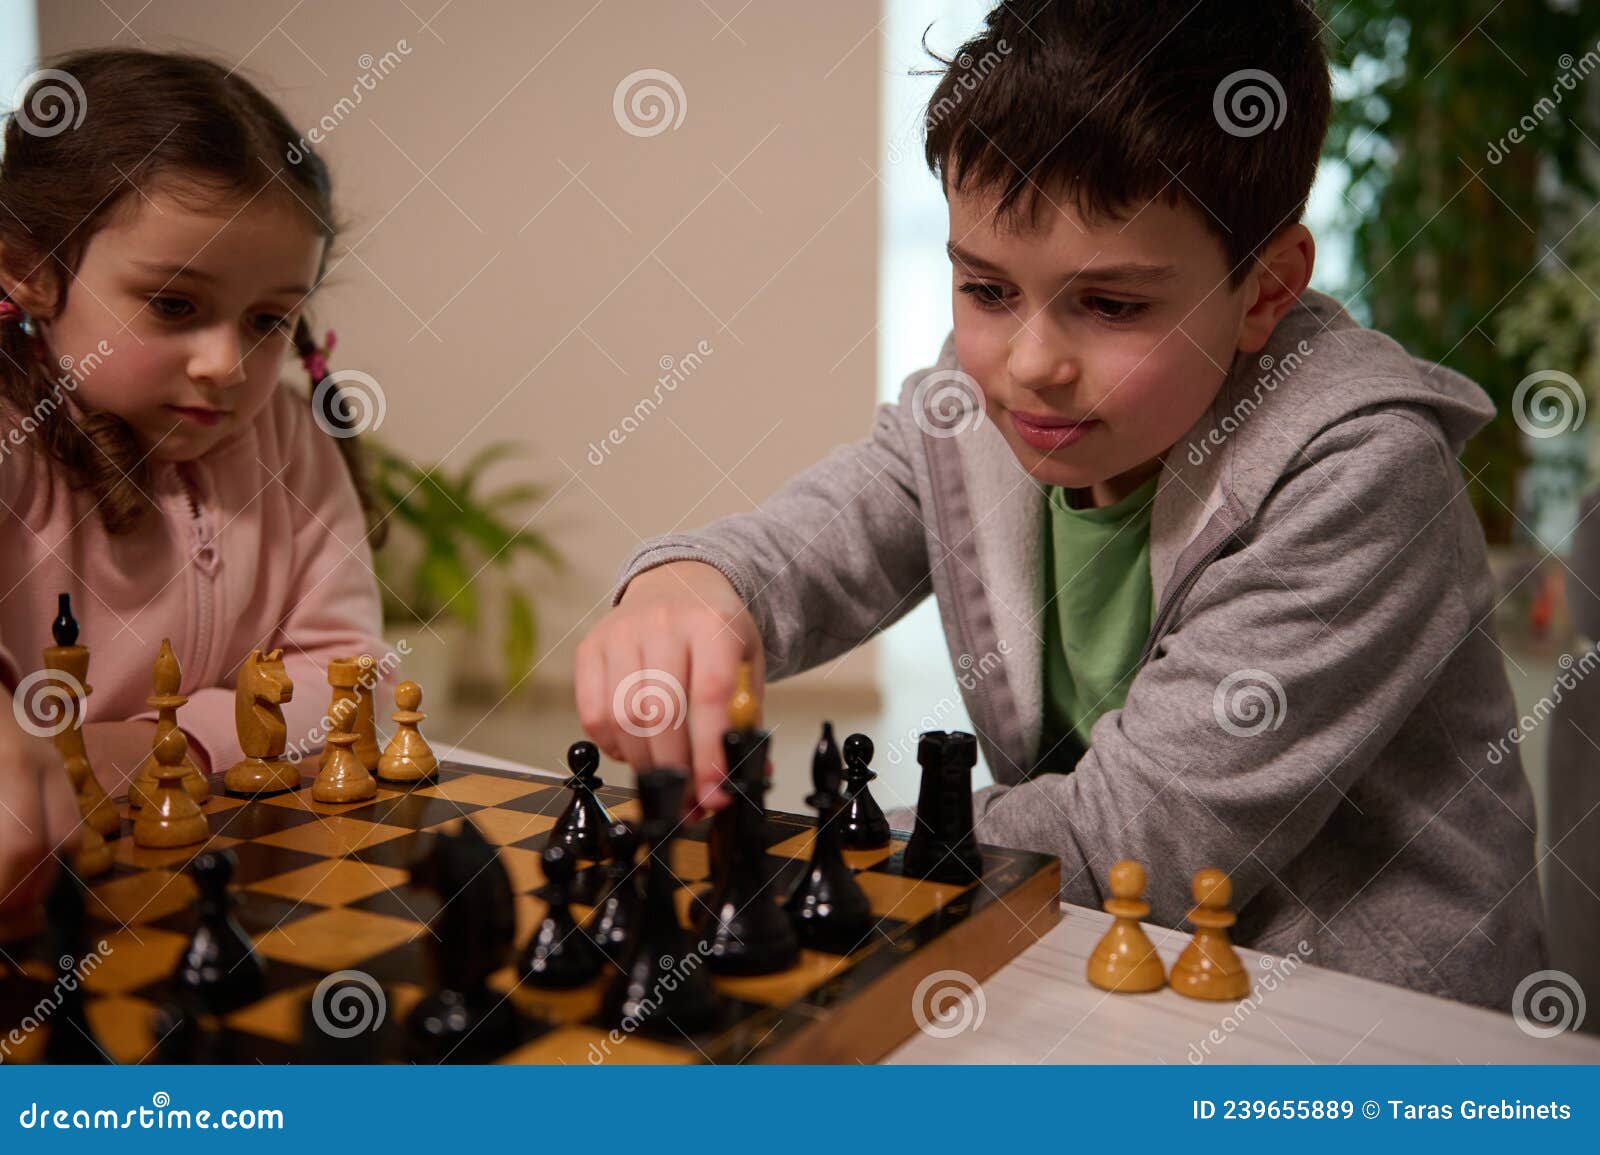 Jogar xadrez te deixa mais inteligente?